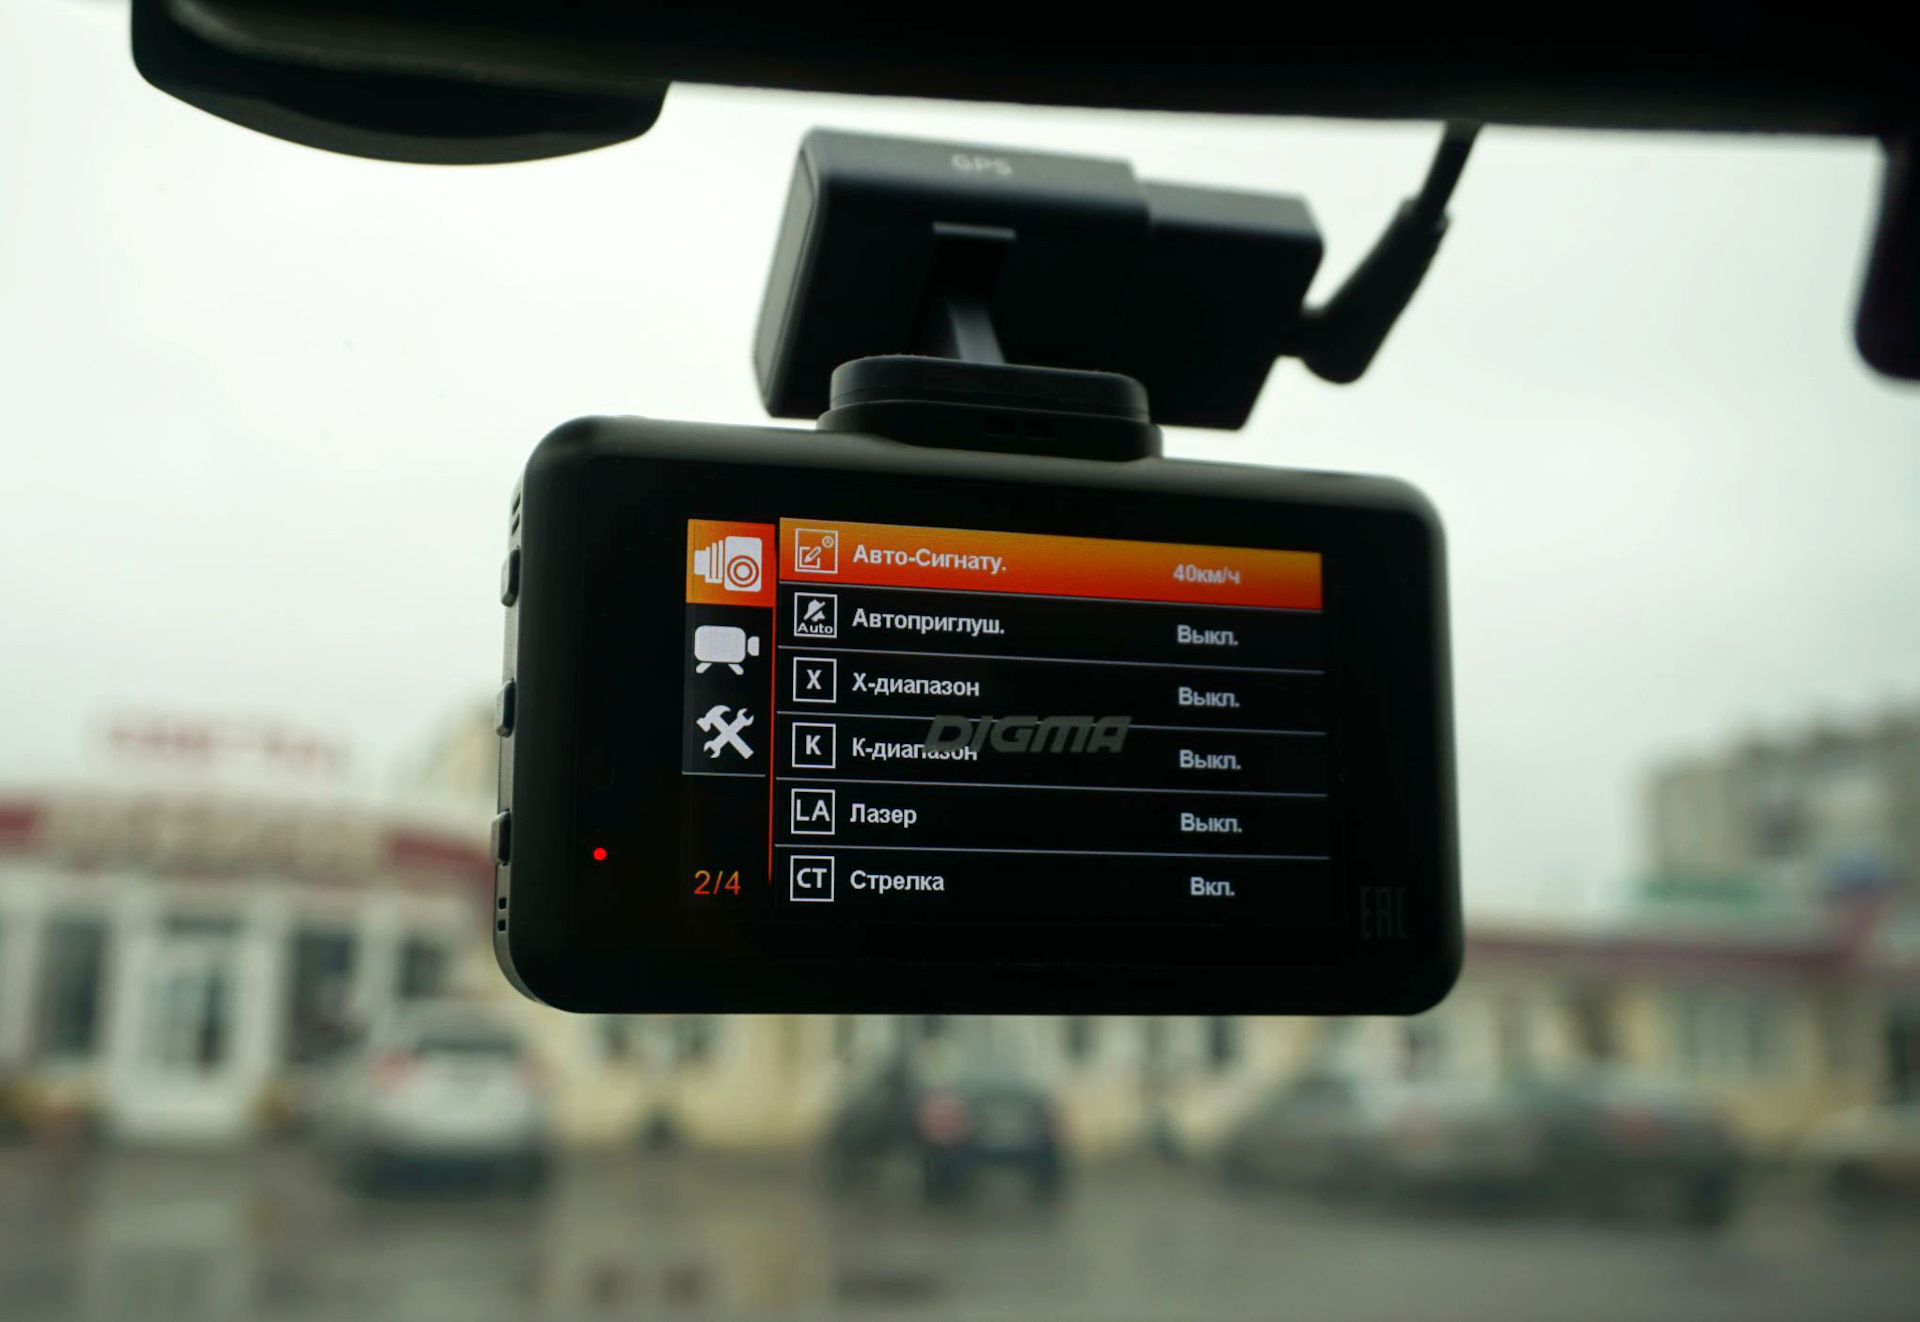 Рейтинг комбо устройств видеорегистраторов. Рейтинг комбо устройств видеорегистраторов с радар-детектором 2020. Размещение комбо устройства в авто. Видеорегистраторы комбо устройства в машину картинка без фона.